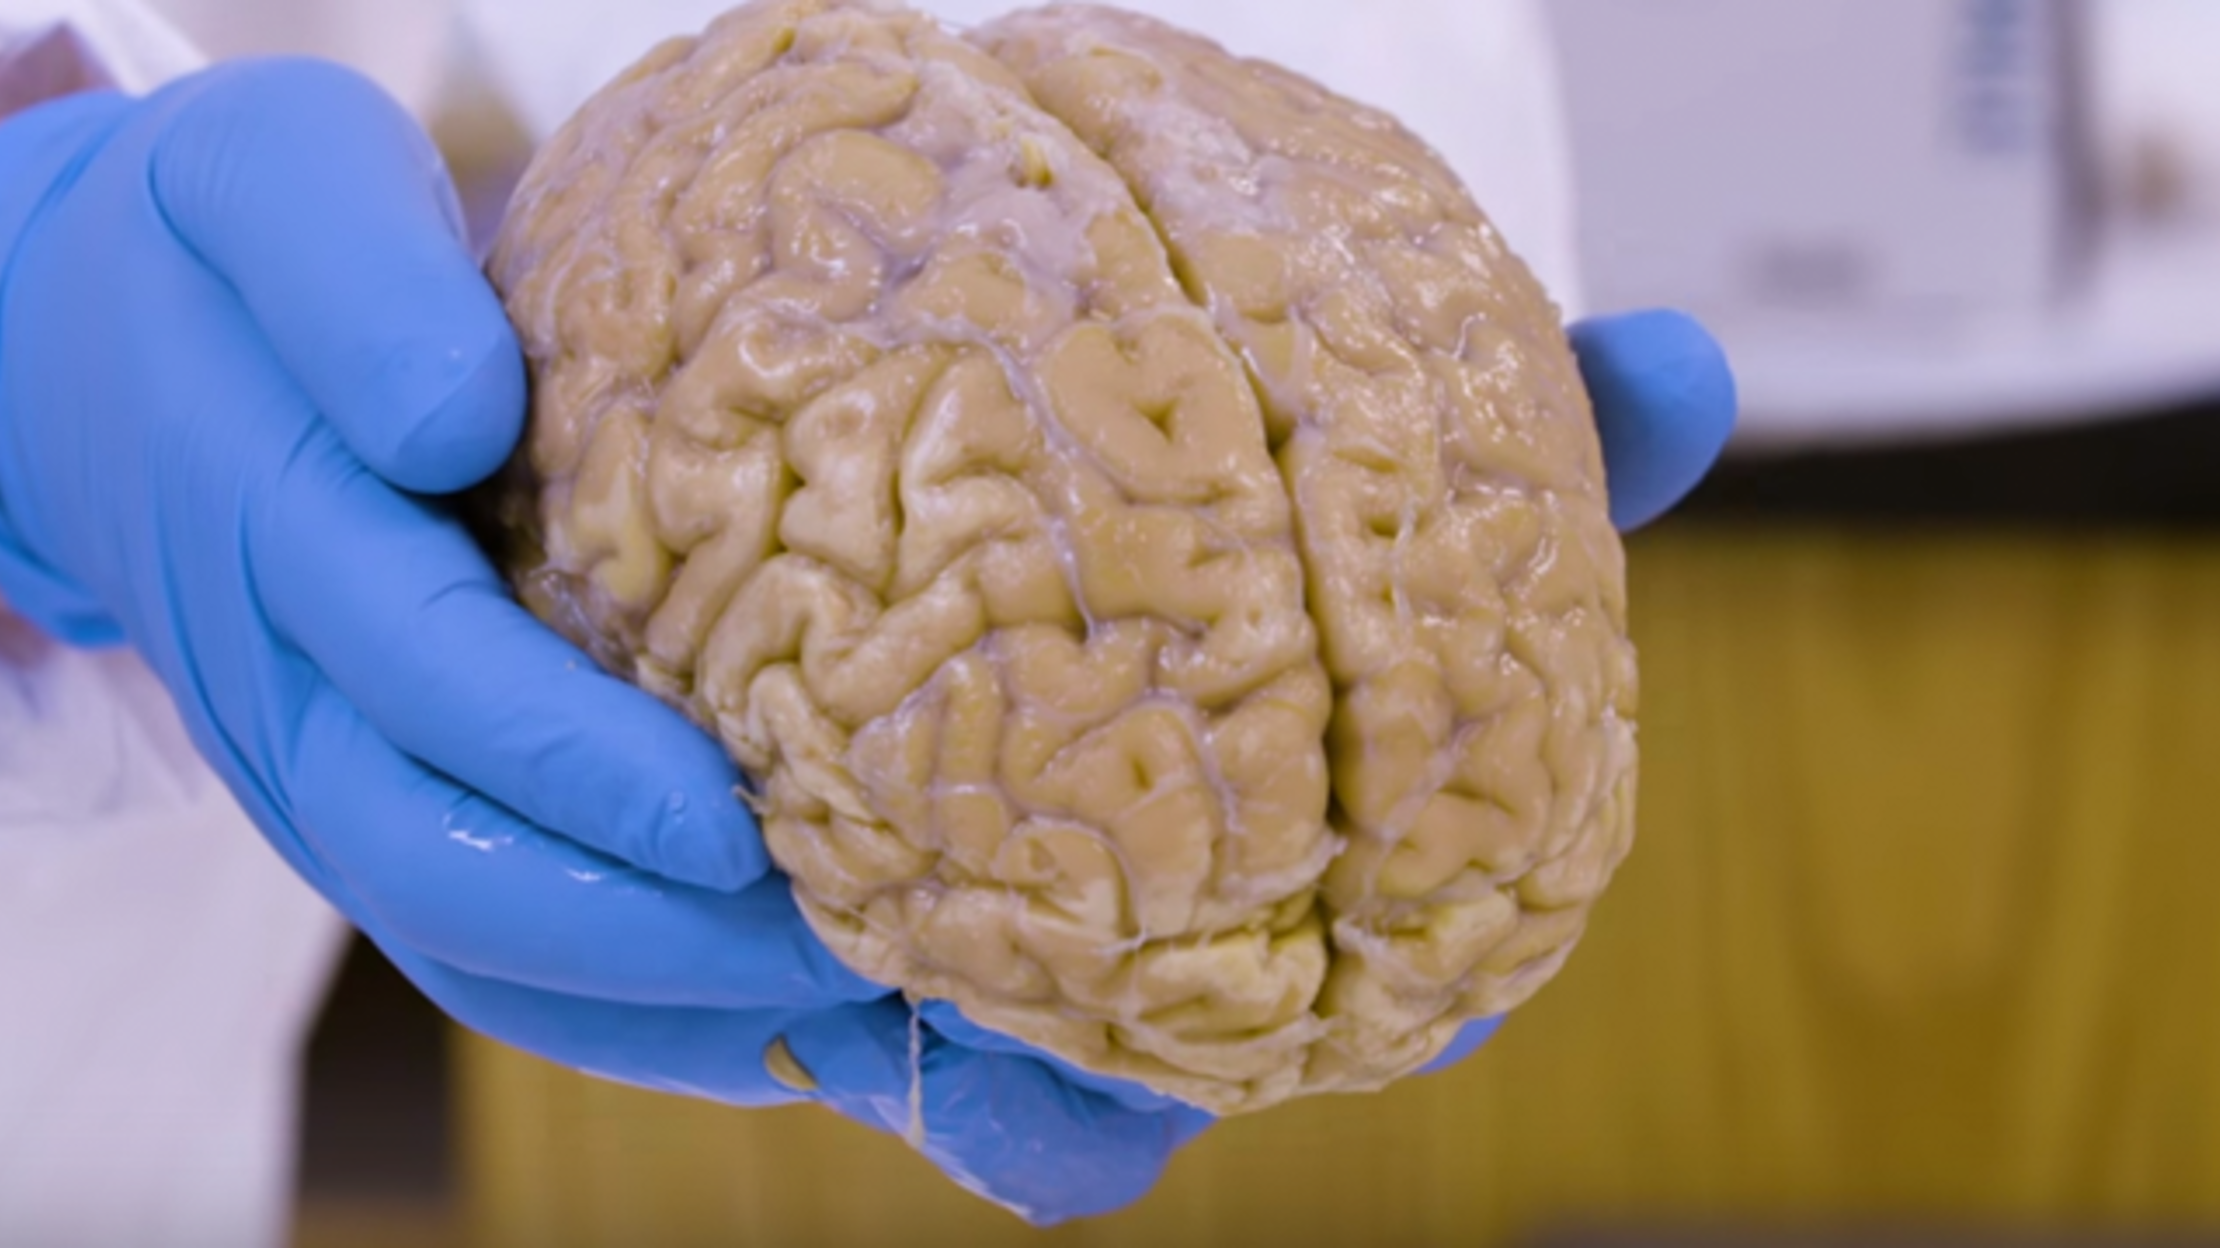 بانک مغز انسان در هاروارد برای تشخیص مشکلات پزشکی